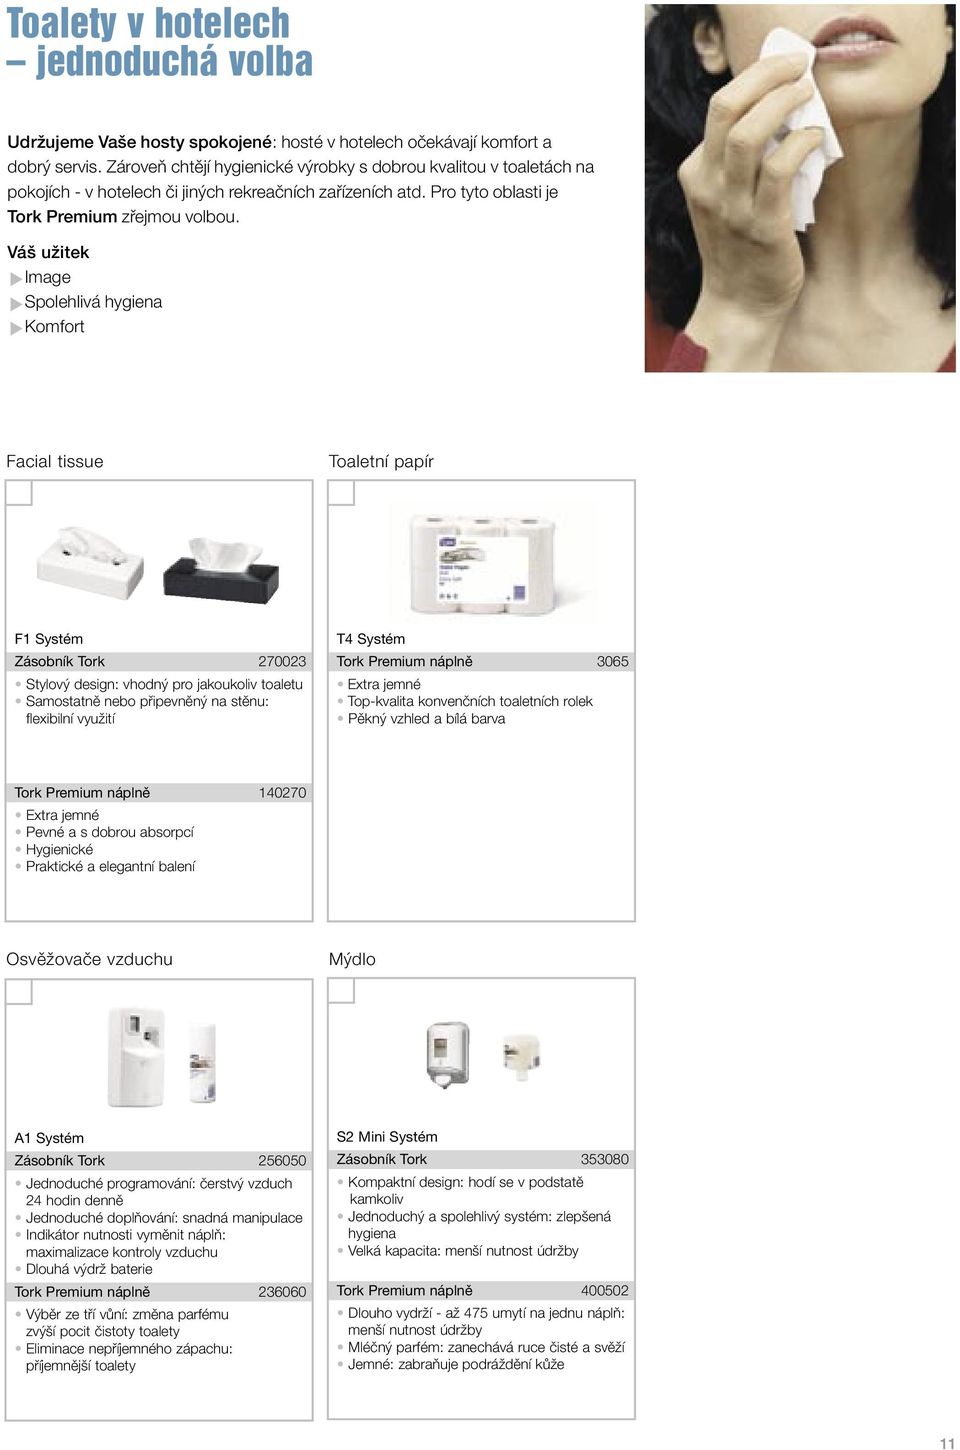 Váš užitek Image Spolehlivá hygiena Komfort Facial tissue Toaletní papír F1 Systém Zásobník Tork 270023 Stylový design: vhodný pro jakoukoliv toaletu Samostatně nebo připevněný na stěnu: flexibilní